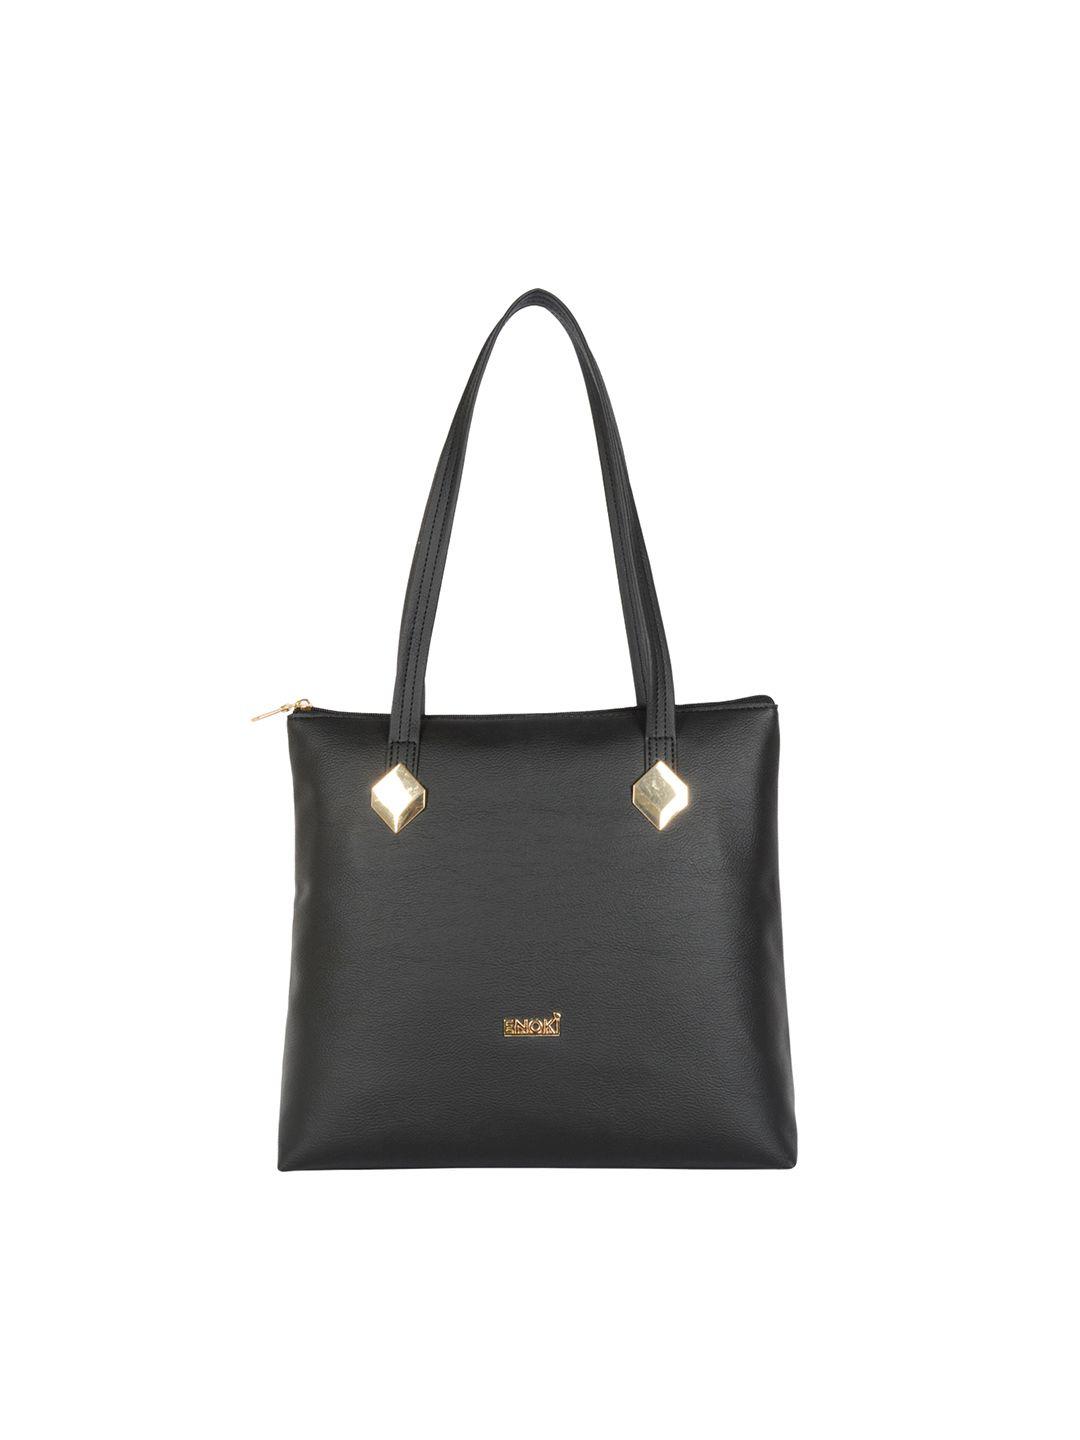 enoki-shopper-shoulder-bag-with-applique-handbags